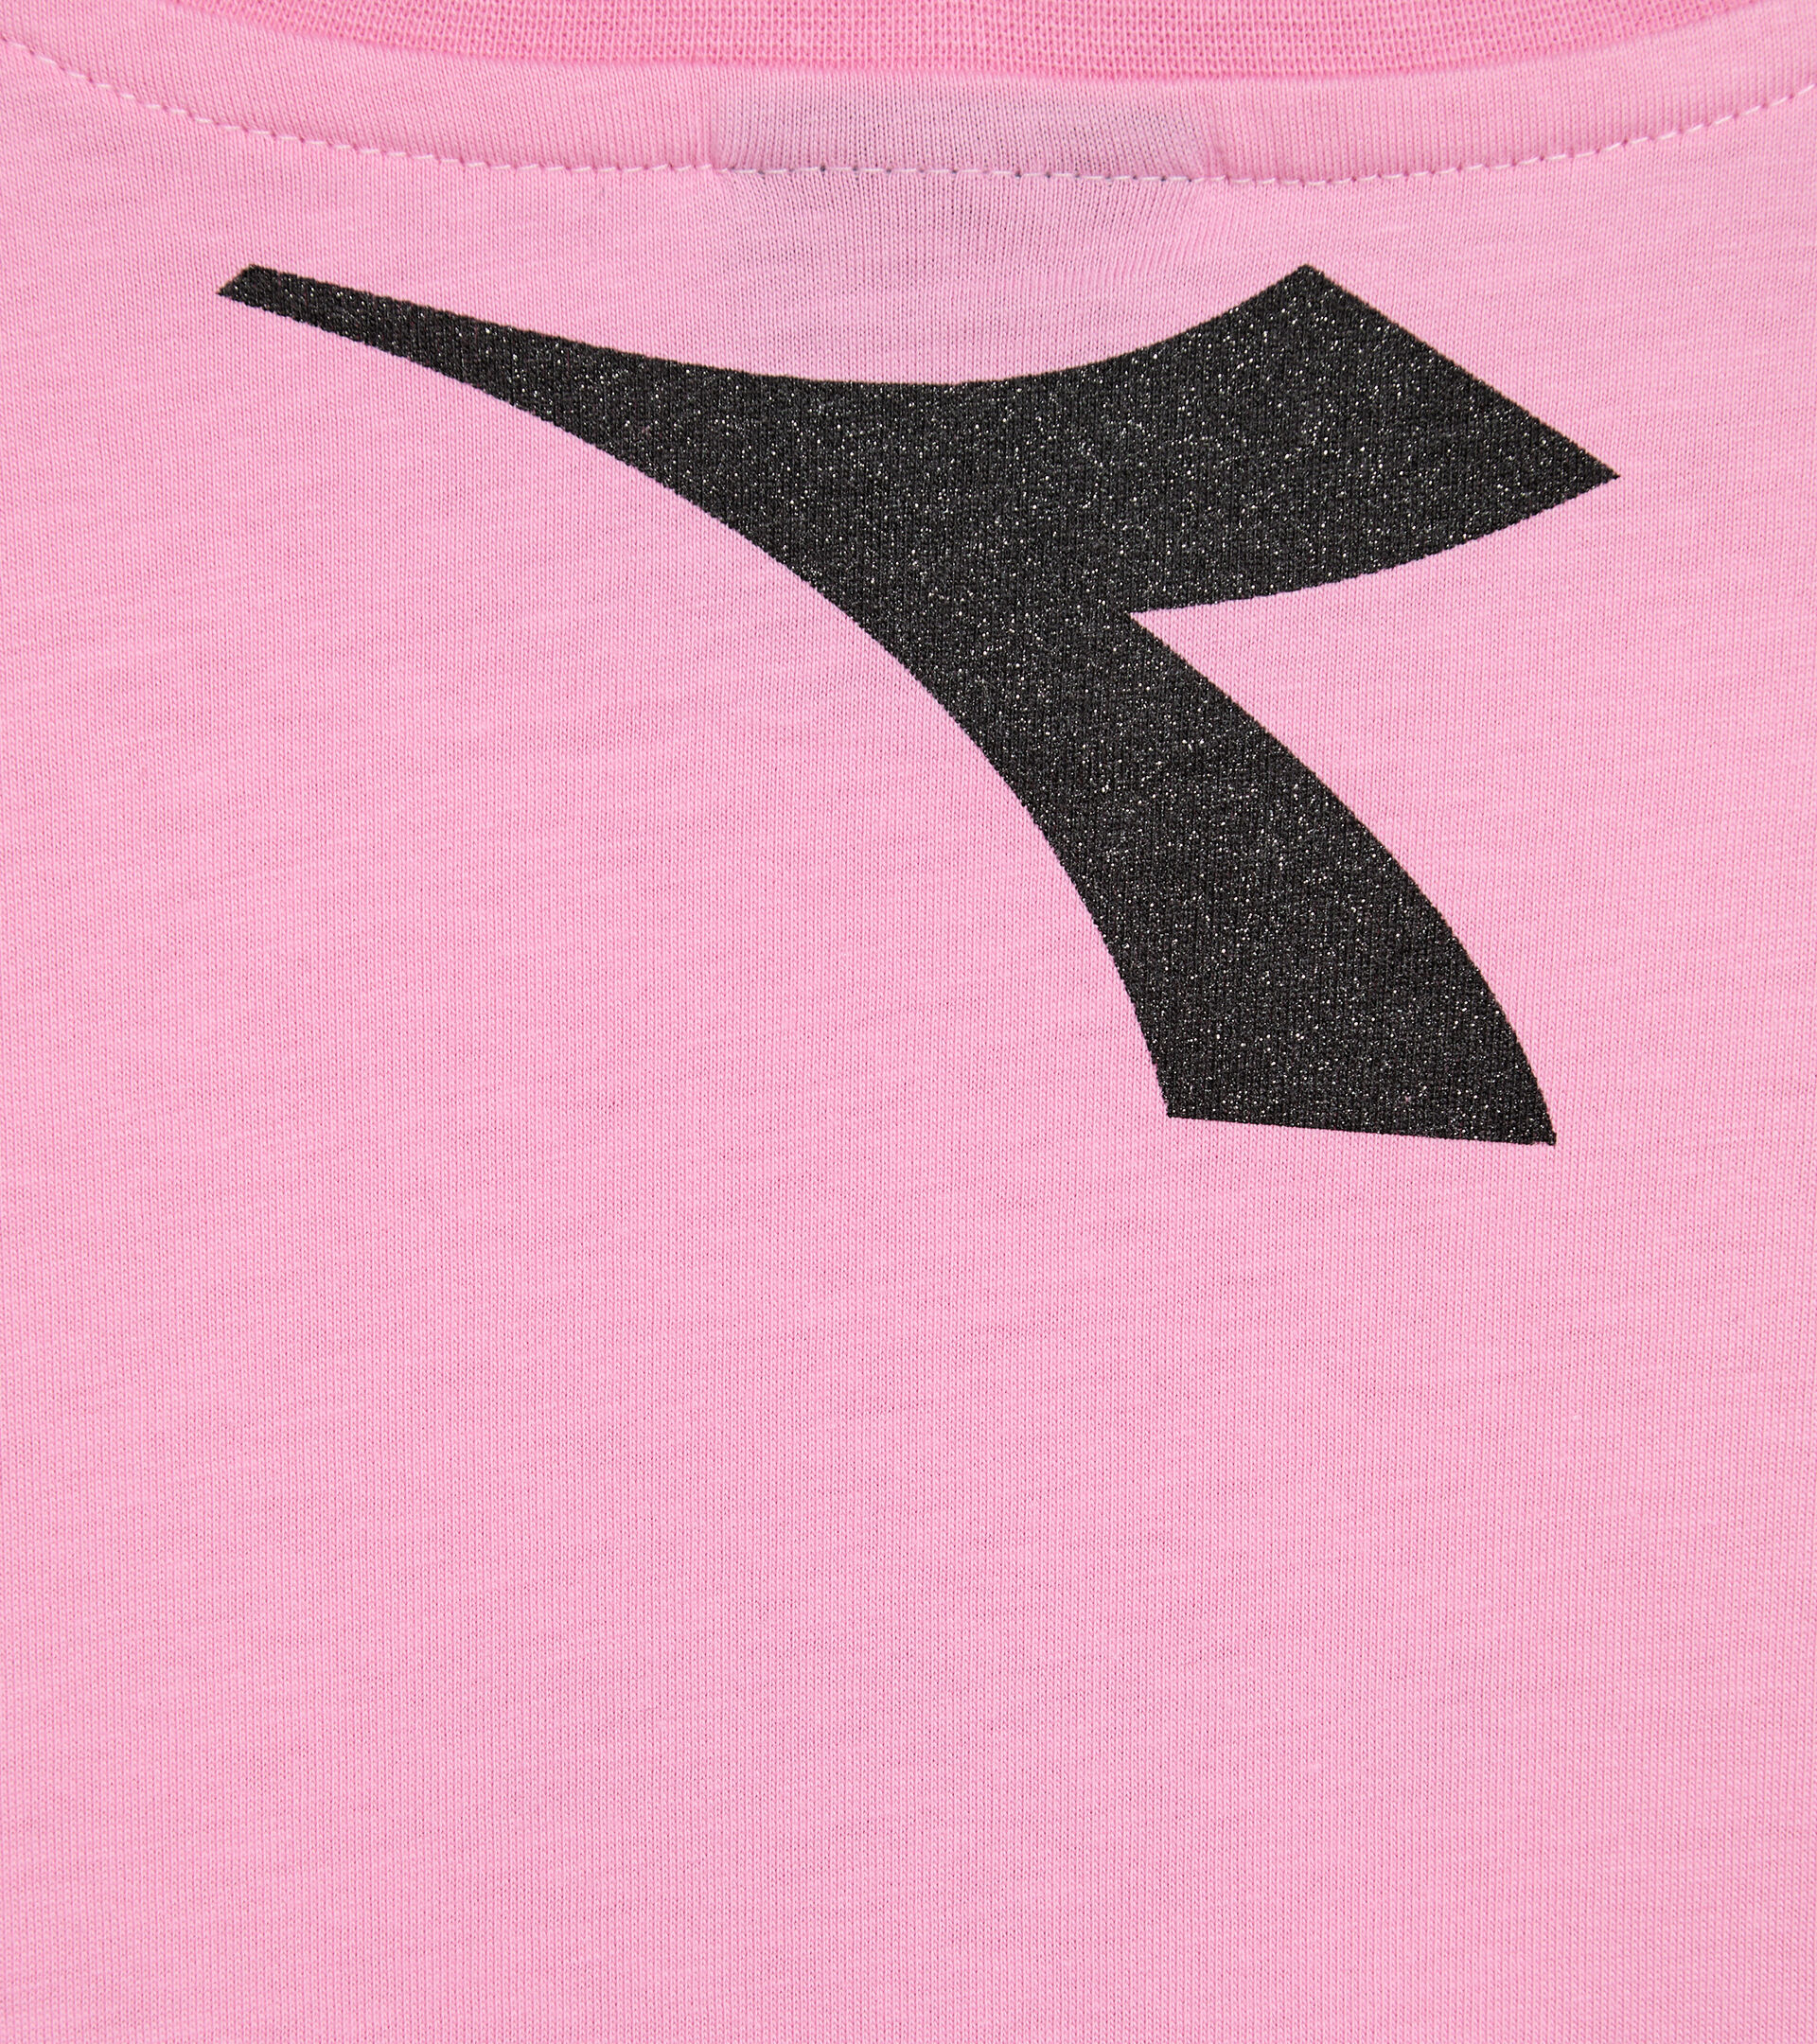 Logo T-shirt - Girl JG.T-SHIRT D PINK MOTHER-OF-PEARL - Diadora